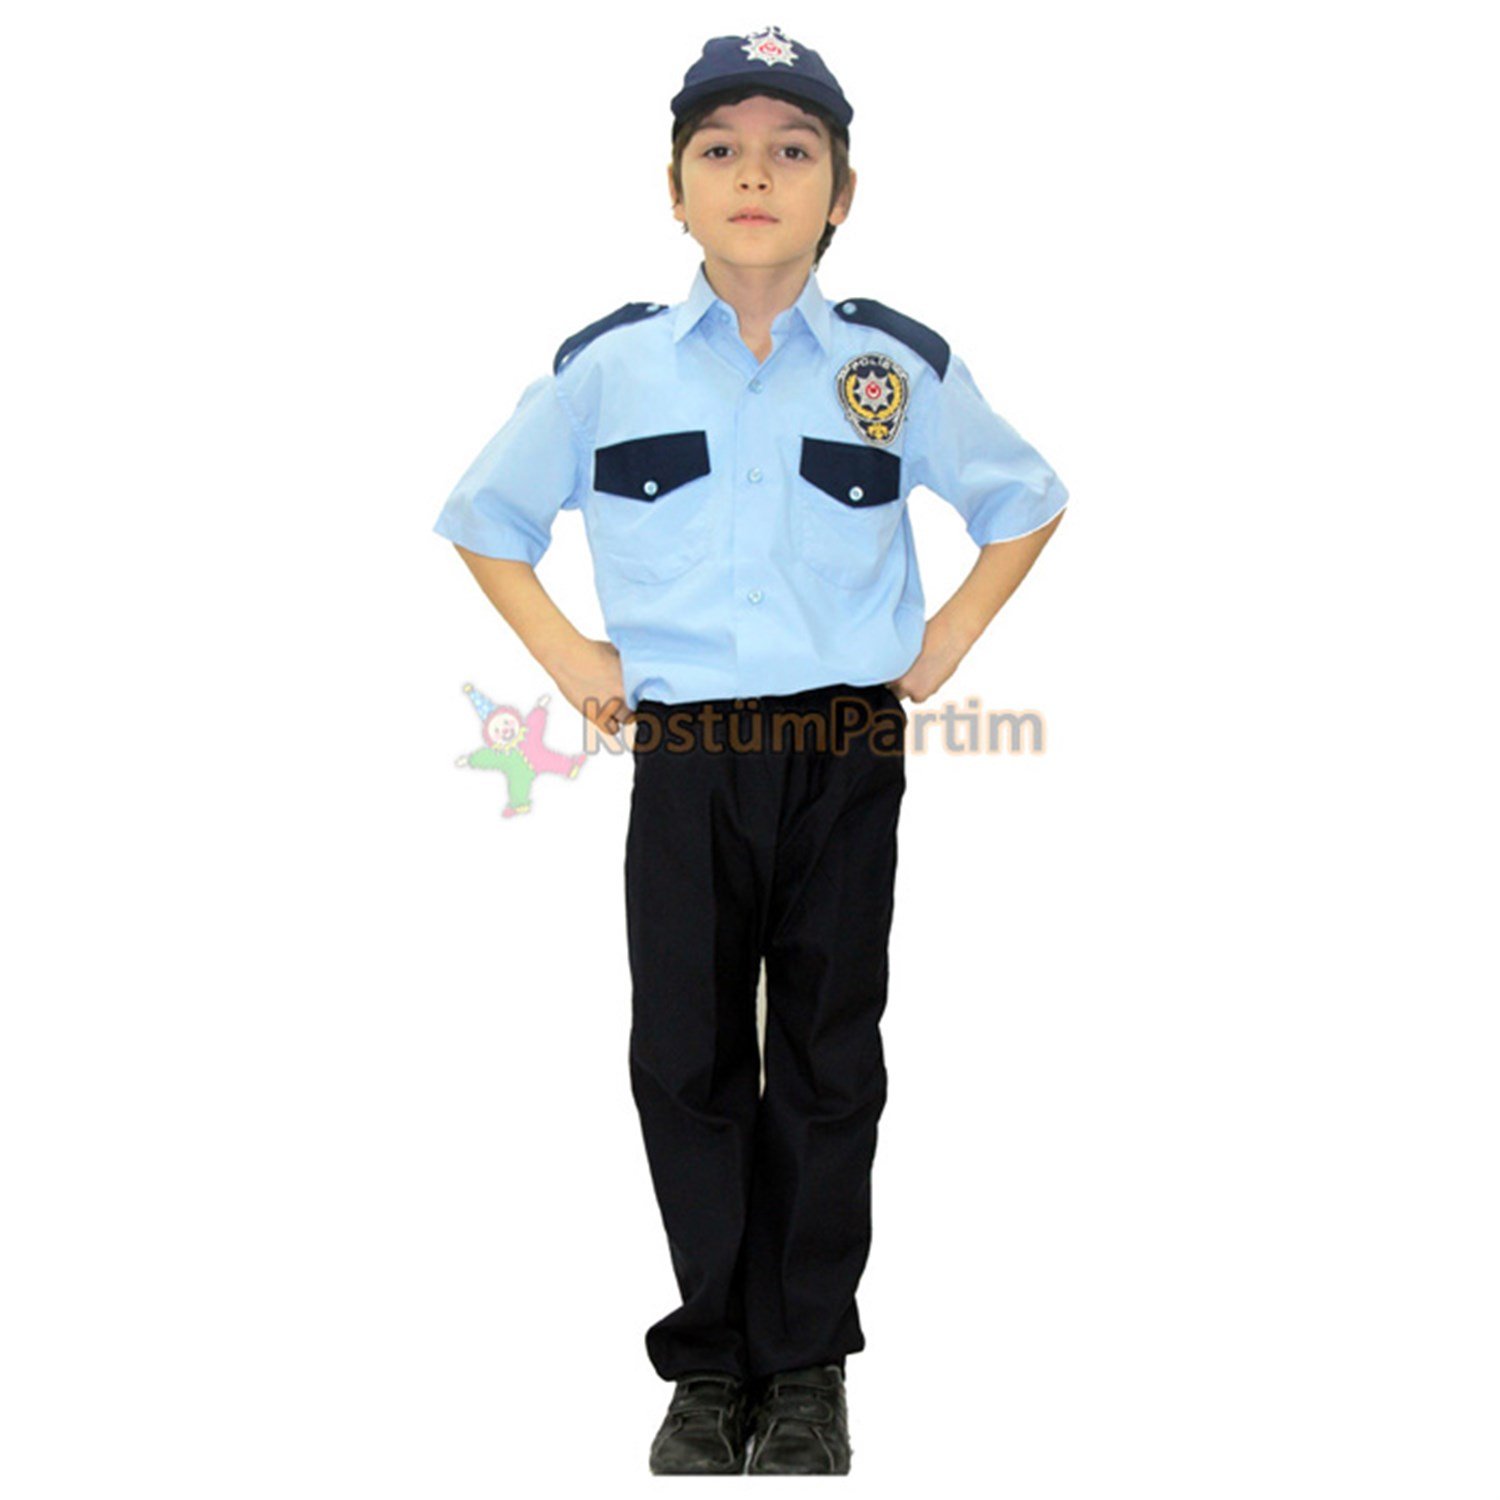 Türk Polisi Kıyafeti Çocuk Polis Memuru Kostümü - KostümPartim®